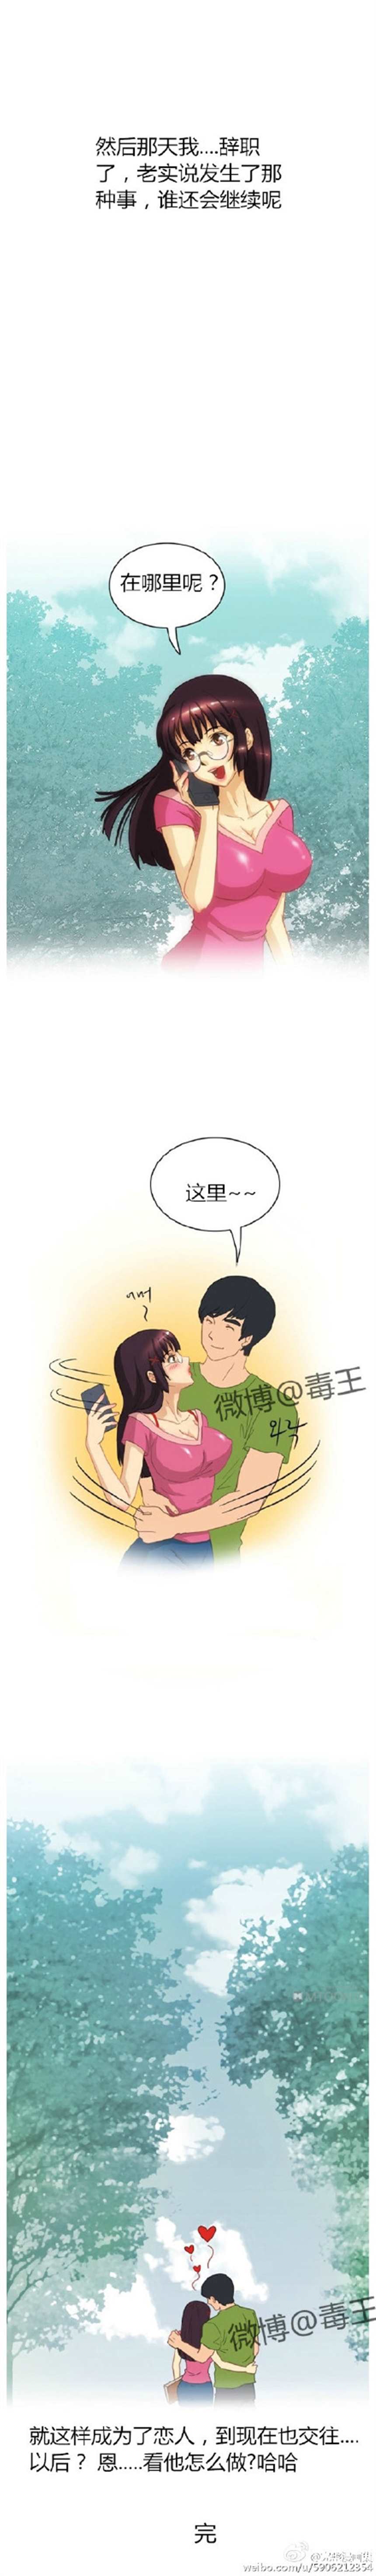 韩国纯爱漫画之《女大学生第一次当家教》完整有结局